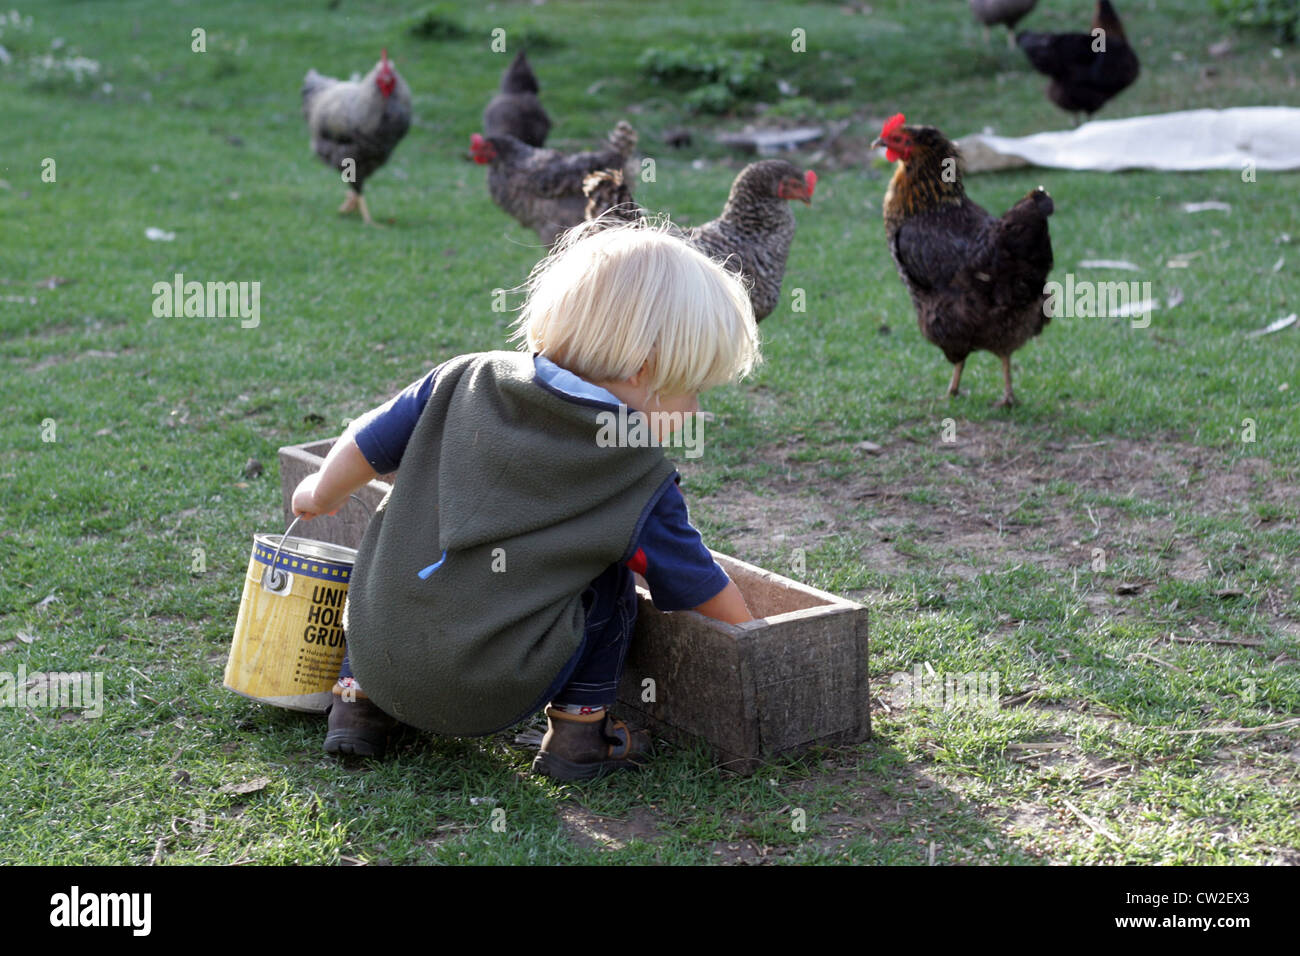 Risplendente village, un bambino alimentazione di polli in azienda Foto Stock